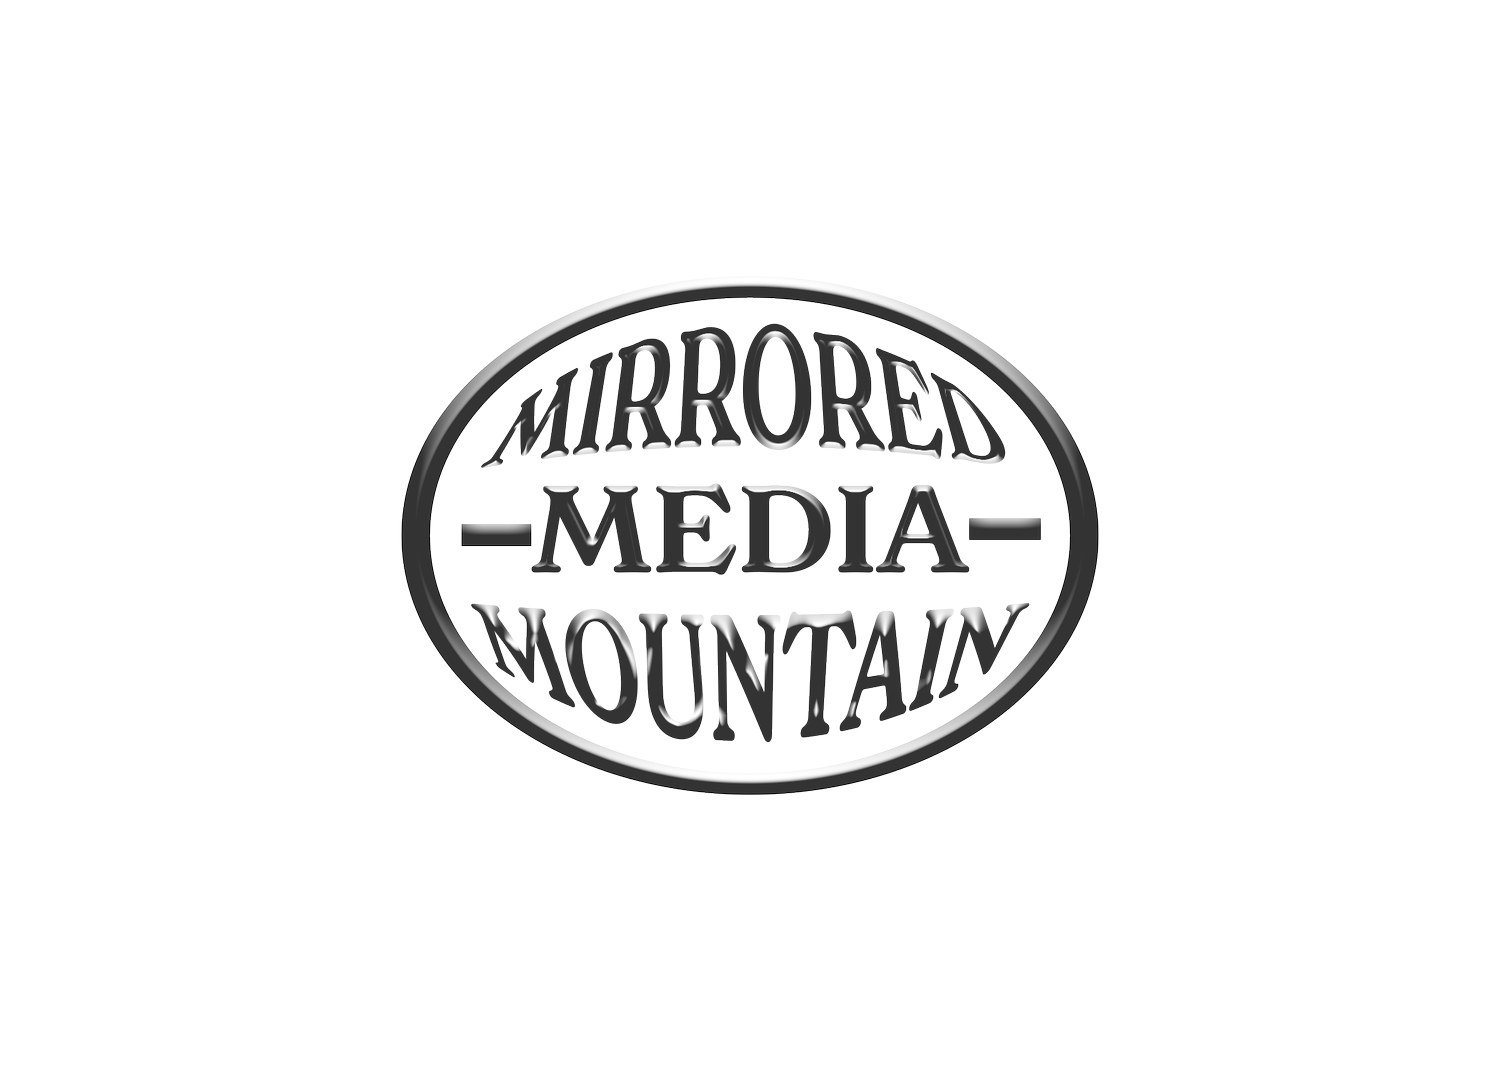 Mirrored Mountain Media